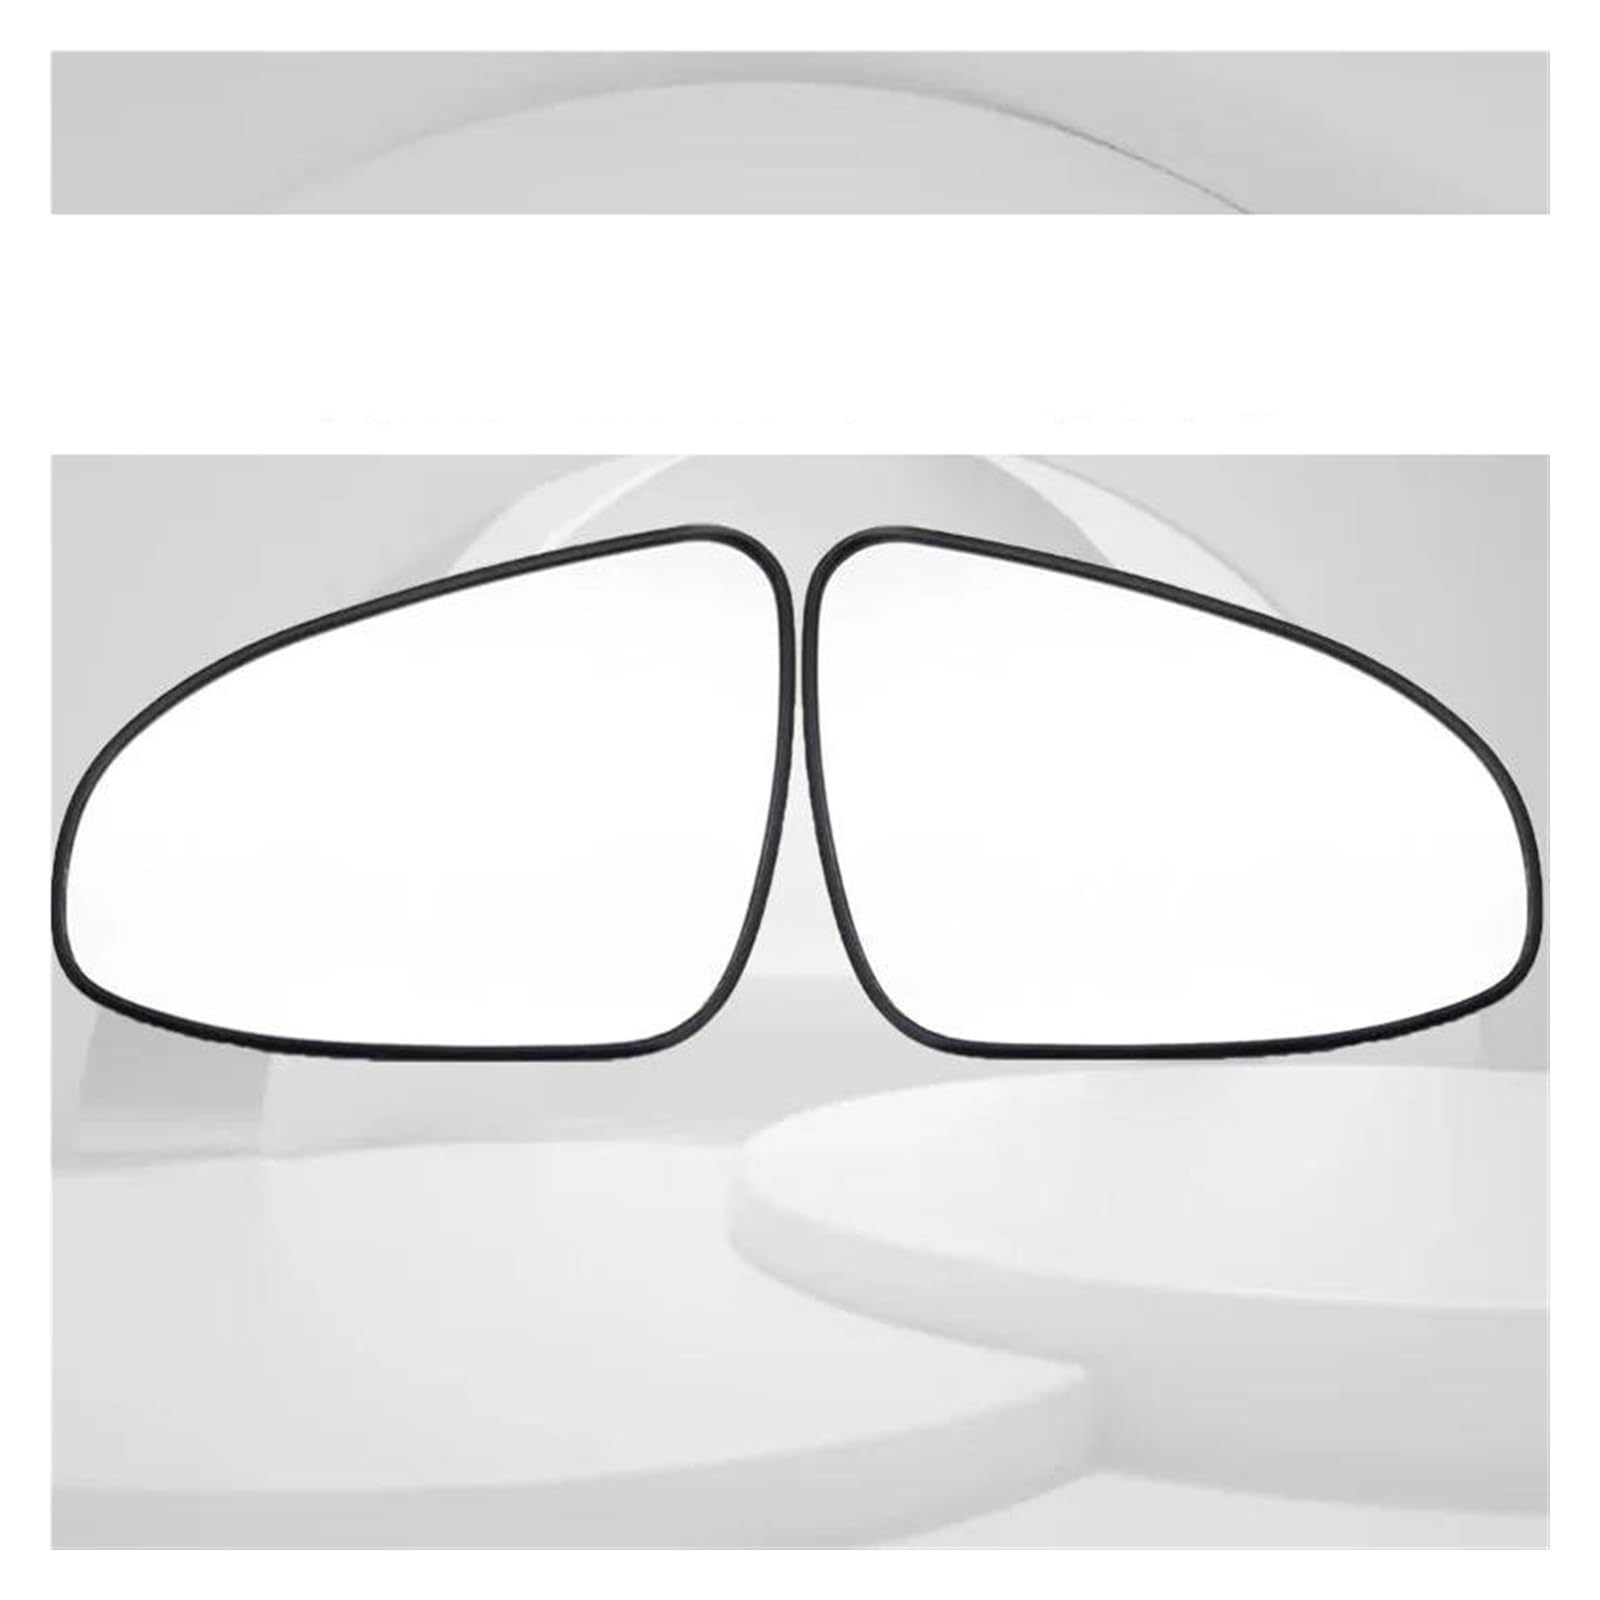 Umkehrlinse Für Toyota Für Corolla 2014 2015 2016 2017 2018 Fahrzeug Rückspiegel Glas Außerhalb Tür Seite LensWith Heizung Ersatzspiegelglas(Left right heated) von DZSYANJIASM